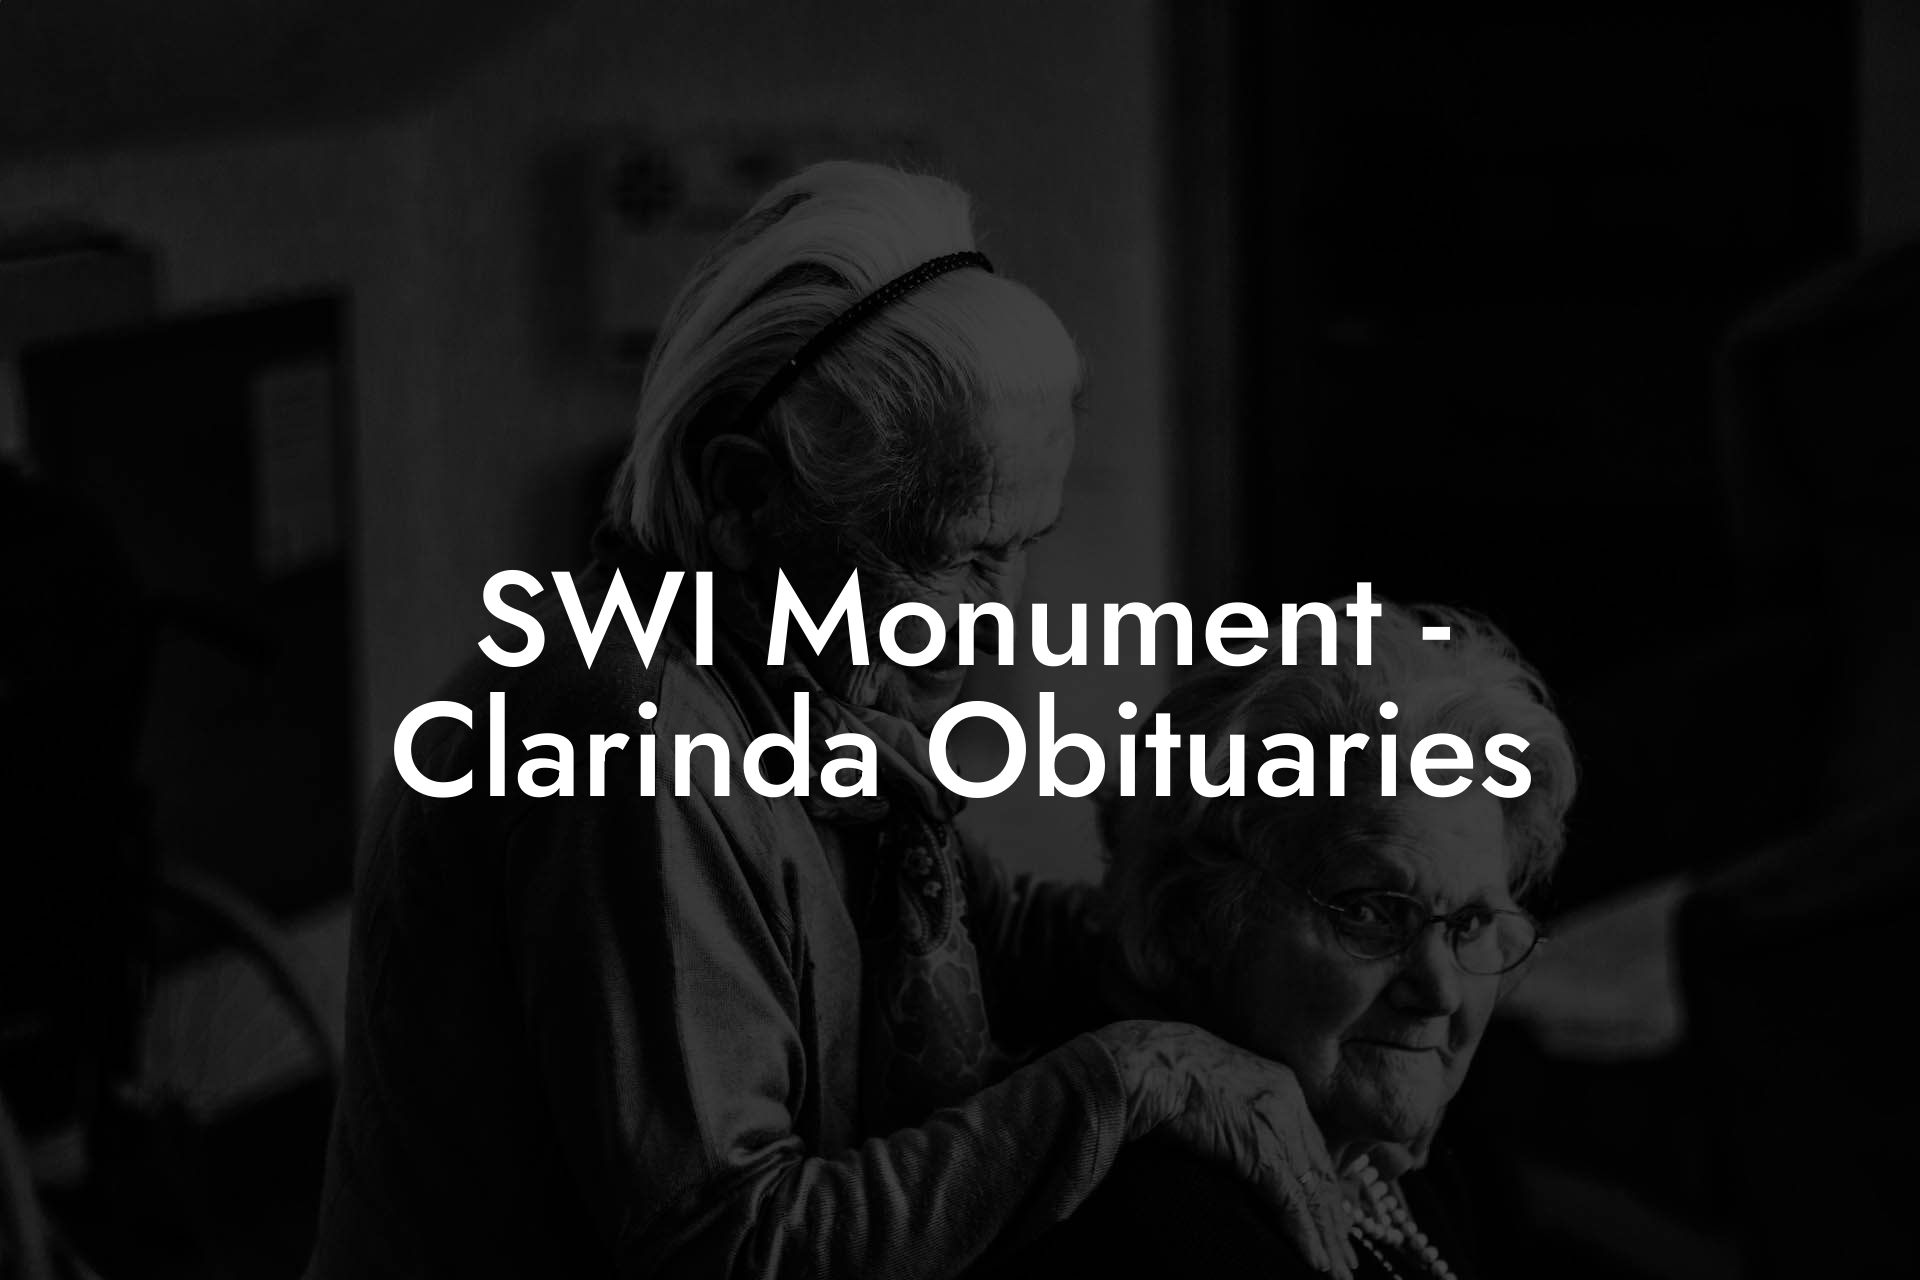 SWI Monument - Clarinda Obituaries